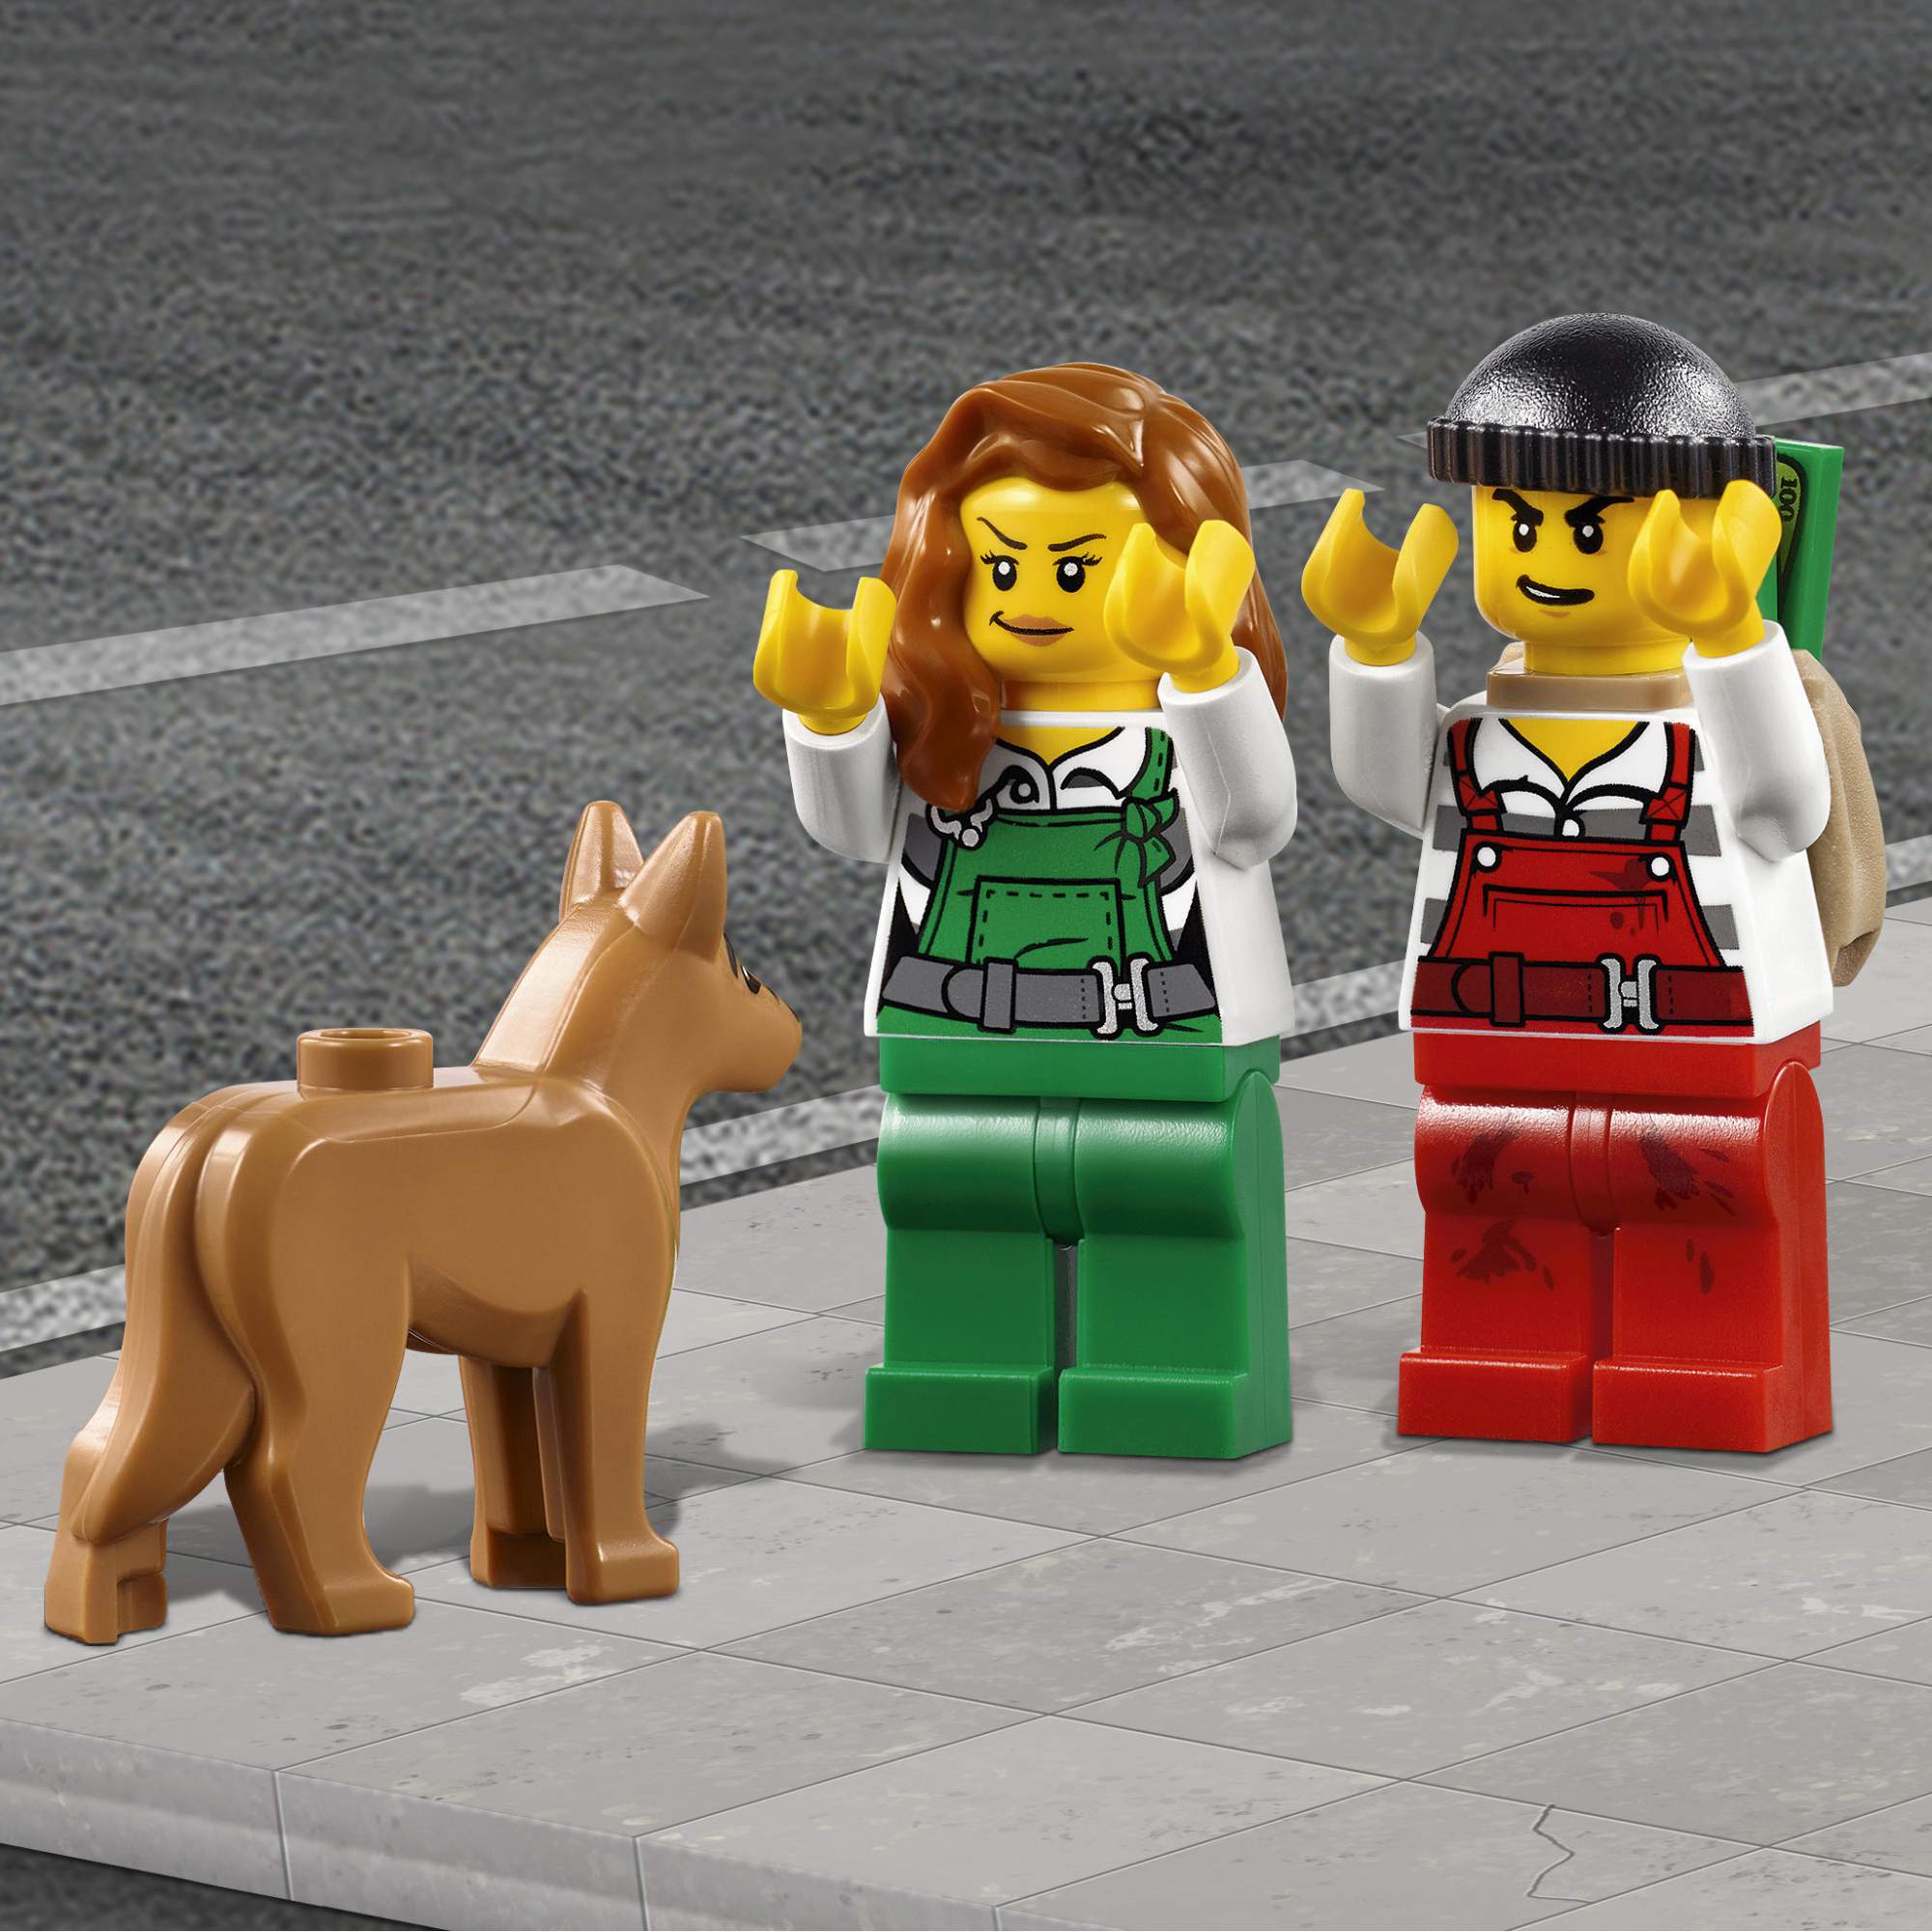 Конструктор LEGO City Police Набор для начинающих Полиция (60136)